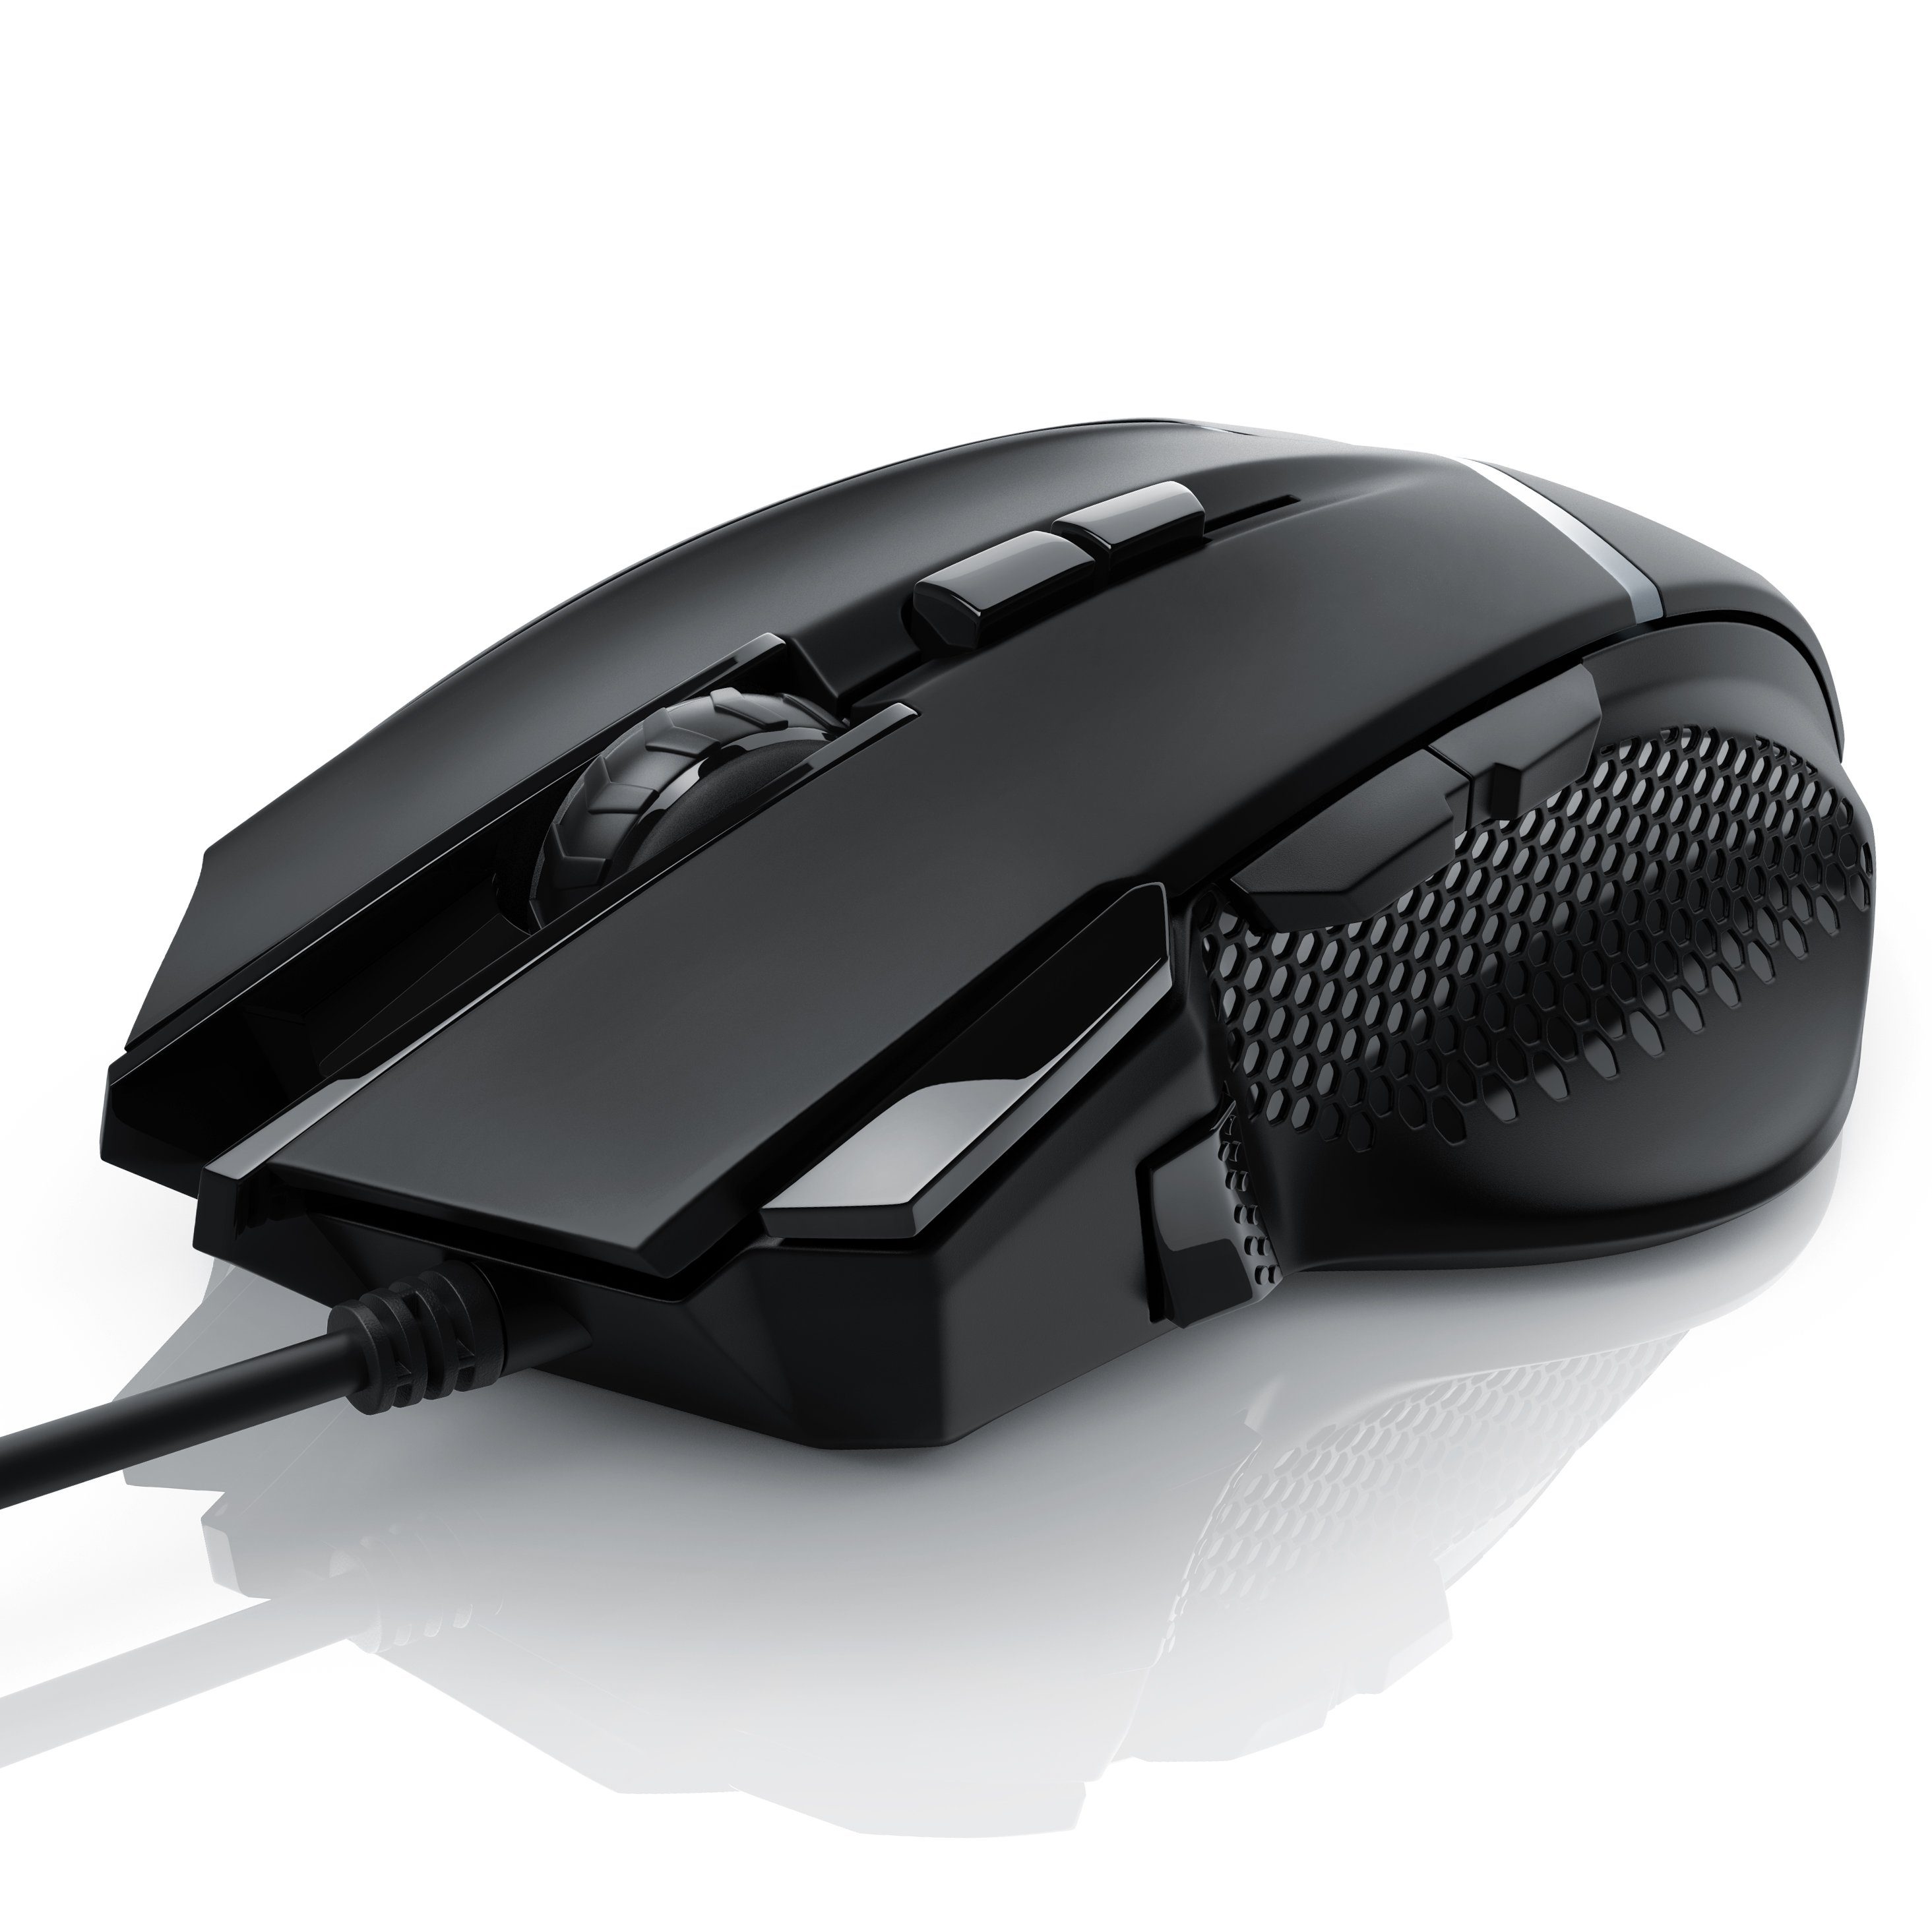 (kabelgebunden, Mouse dpi, CSL 3200 Gewichten) ergonomisch, inkl. dpi, Abtastrate wählbar, 500 Gaming-Maus